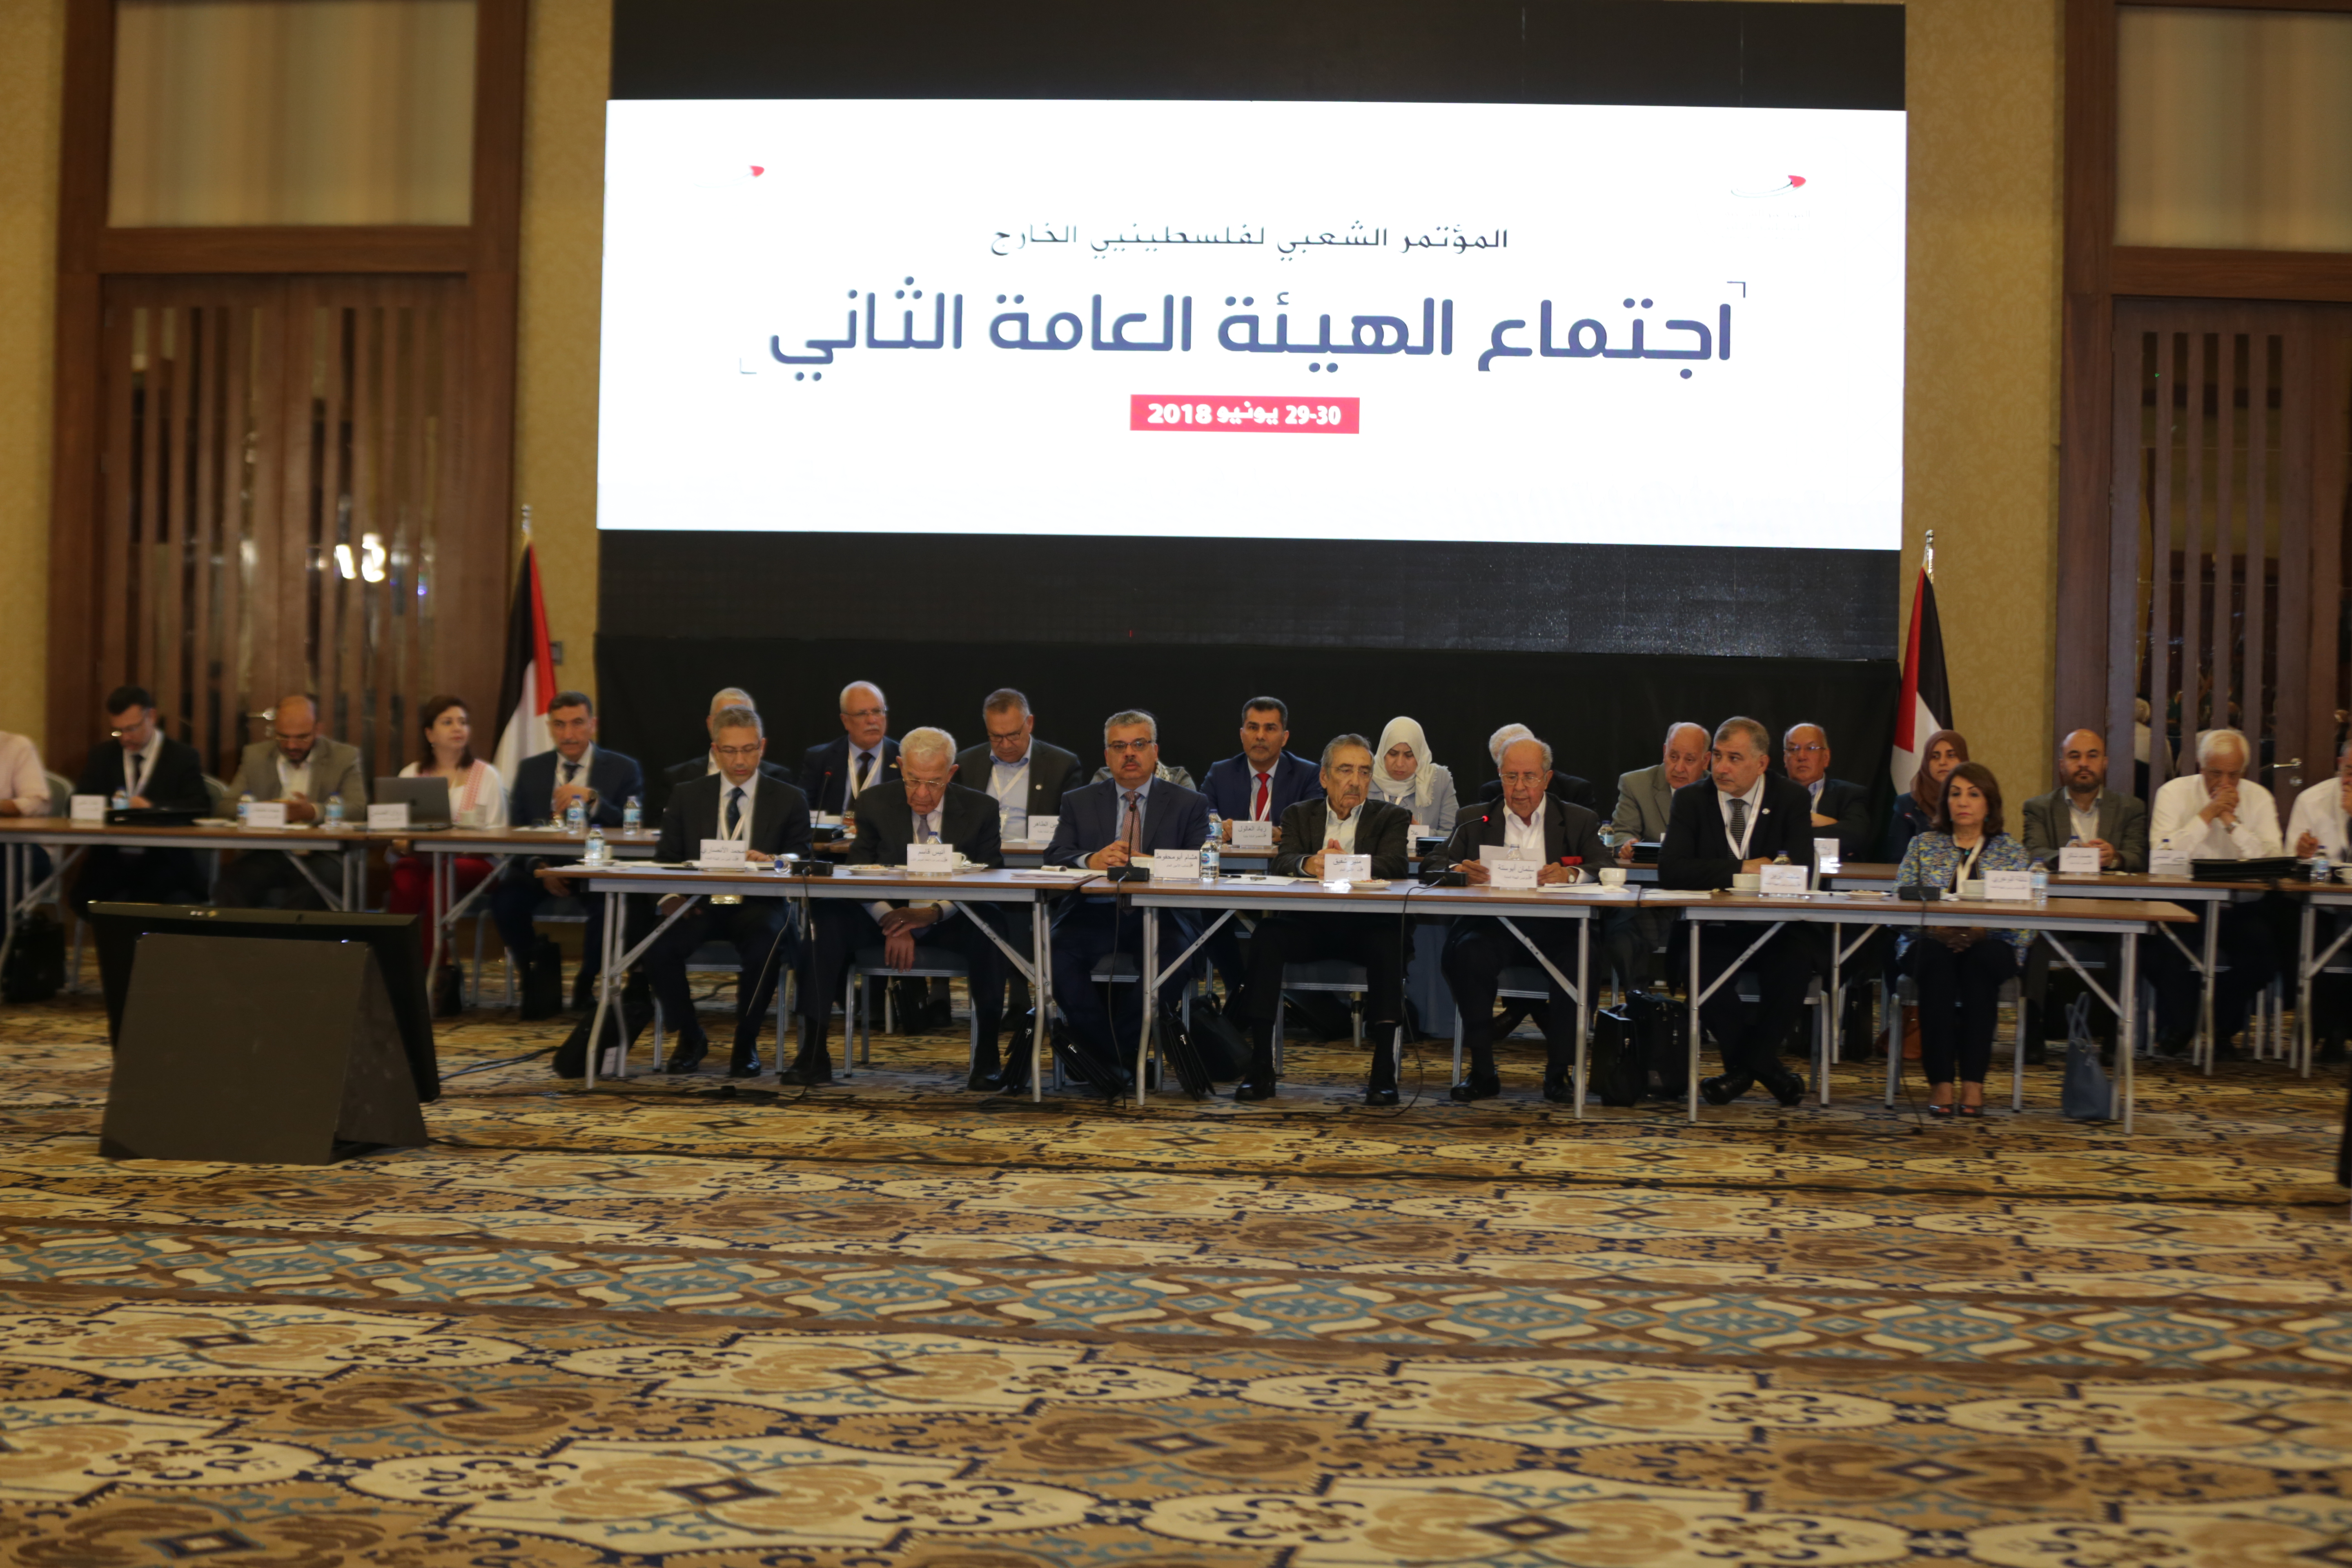 Turkish News - Filistin Diasporası Halk Konferansı’nın 2. Genel Kurul Toplantısı için çalışmalar başladı.